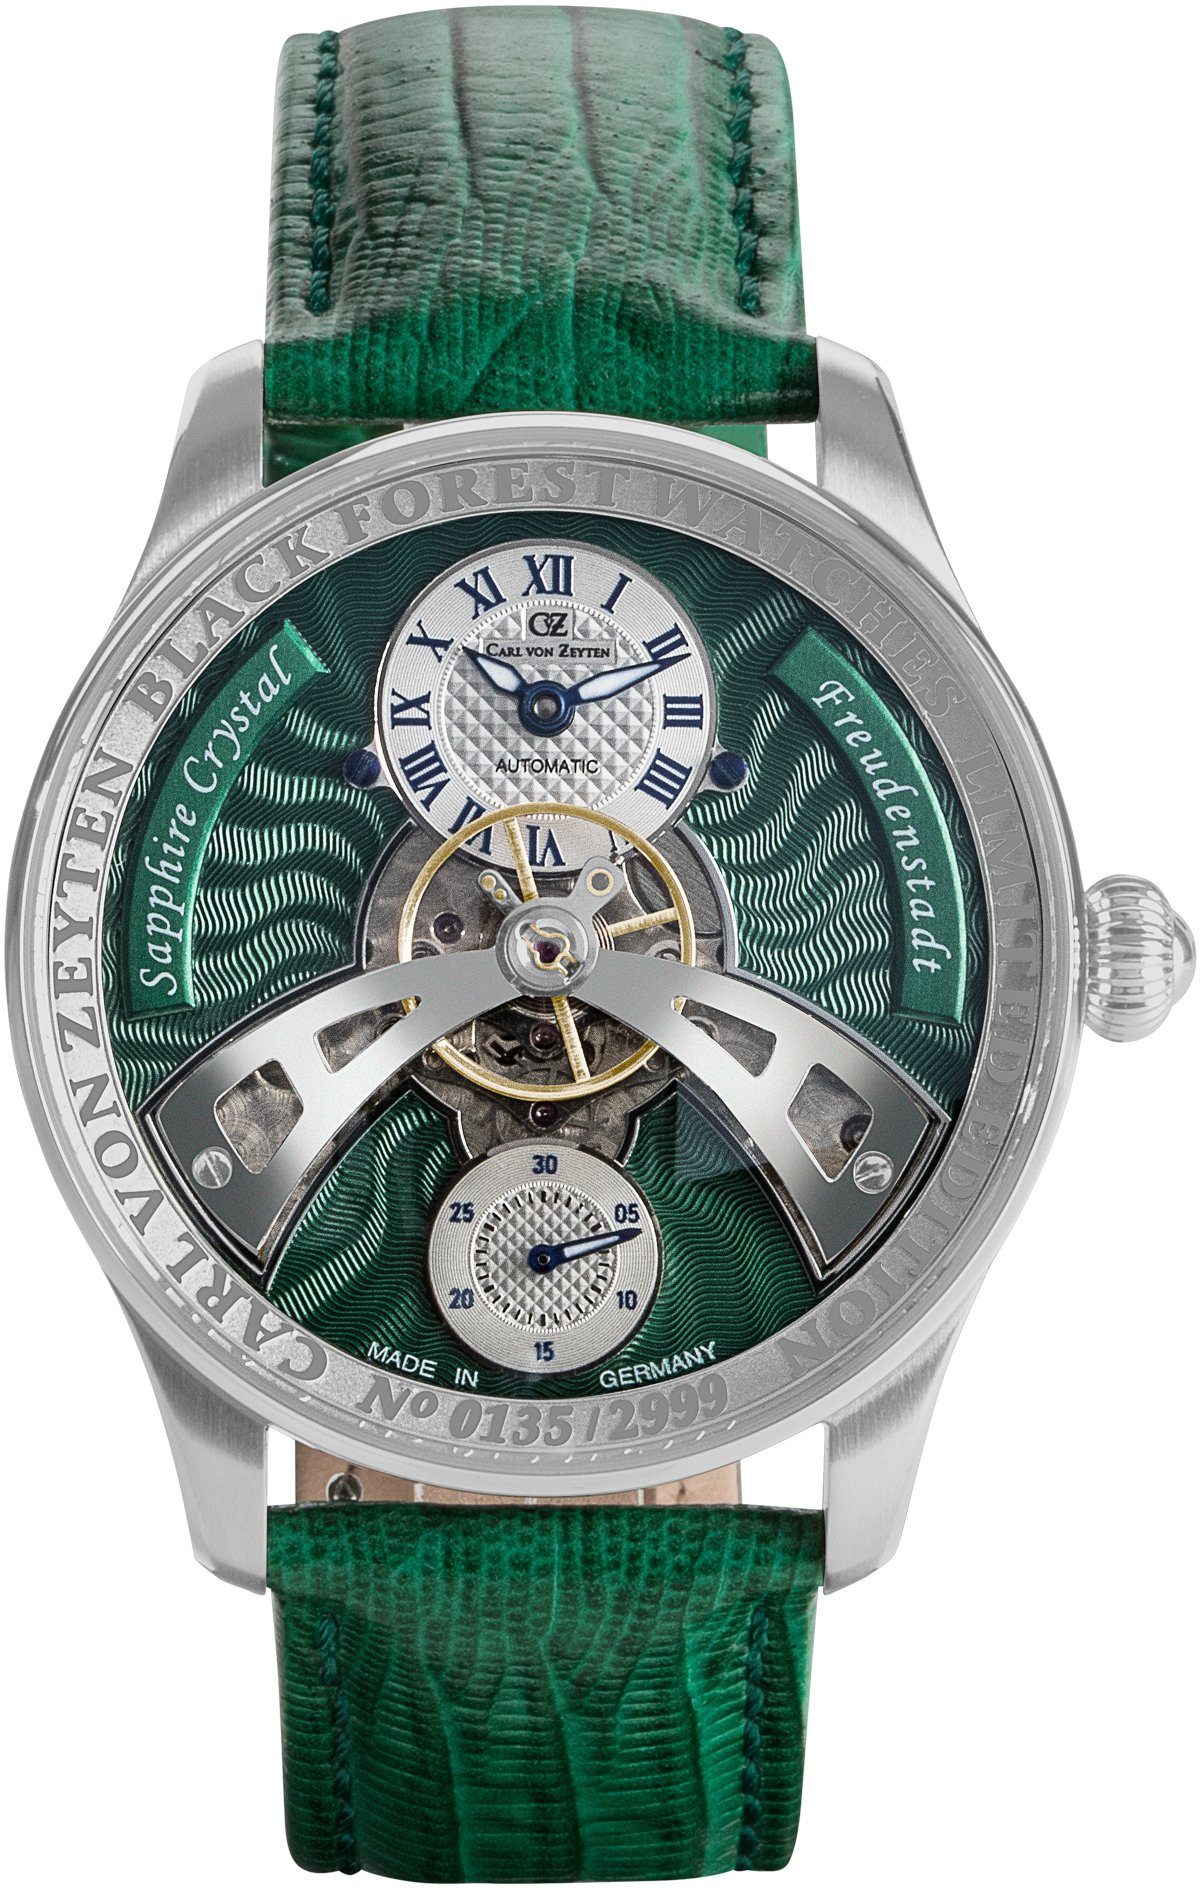 Carl von Zeyten Automatikuhr Freudenstadt, CVZ0043GRS, Armbanduhr, Herrenuhr, Saphirglas, Made in Germany, Mechanische Uhr